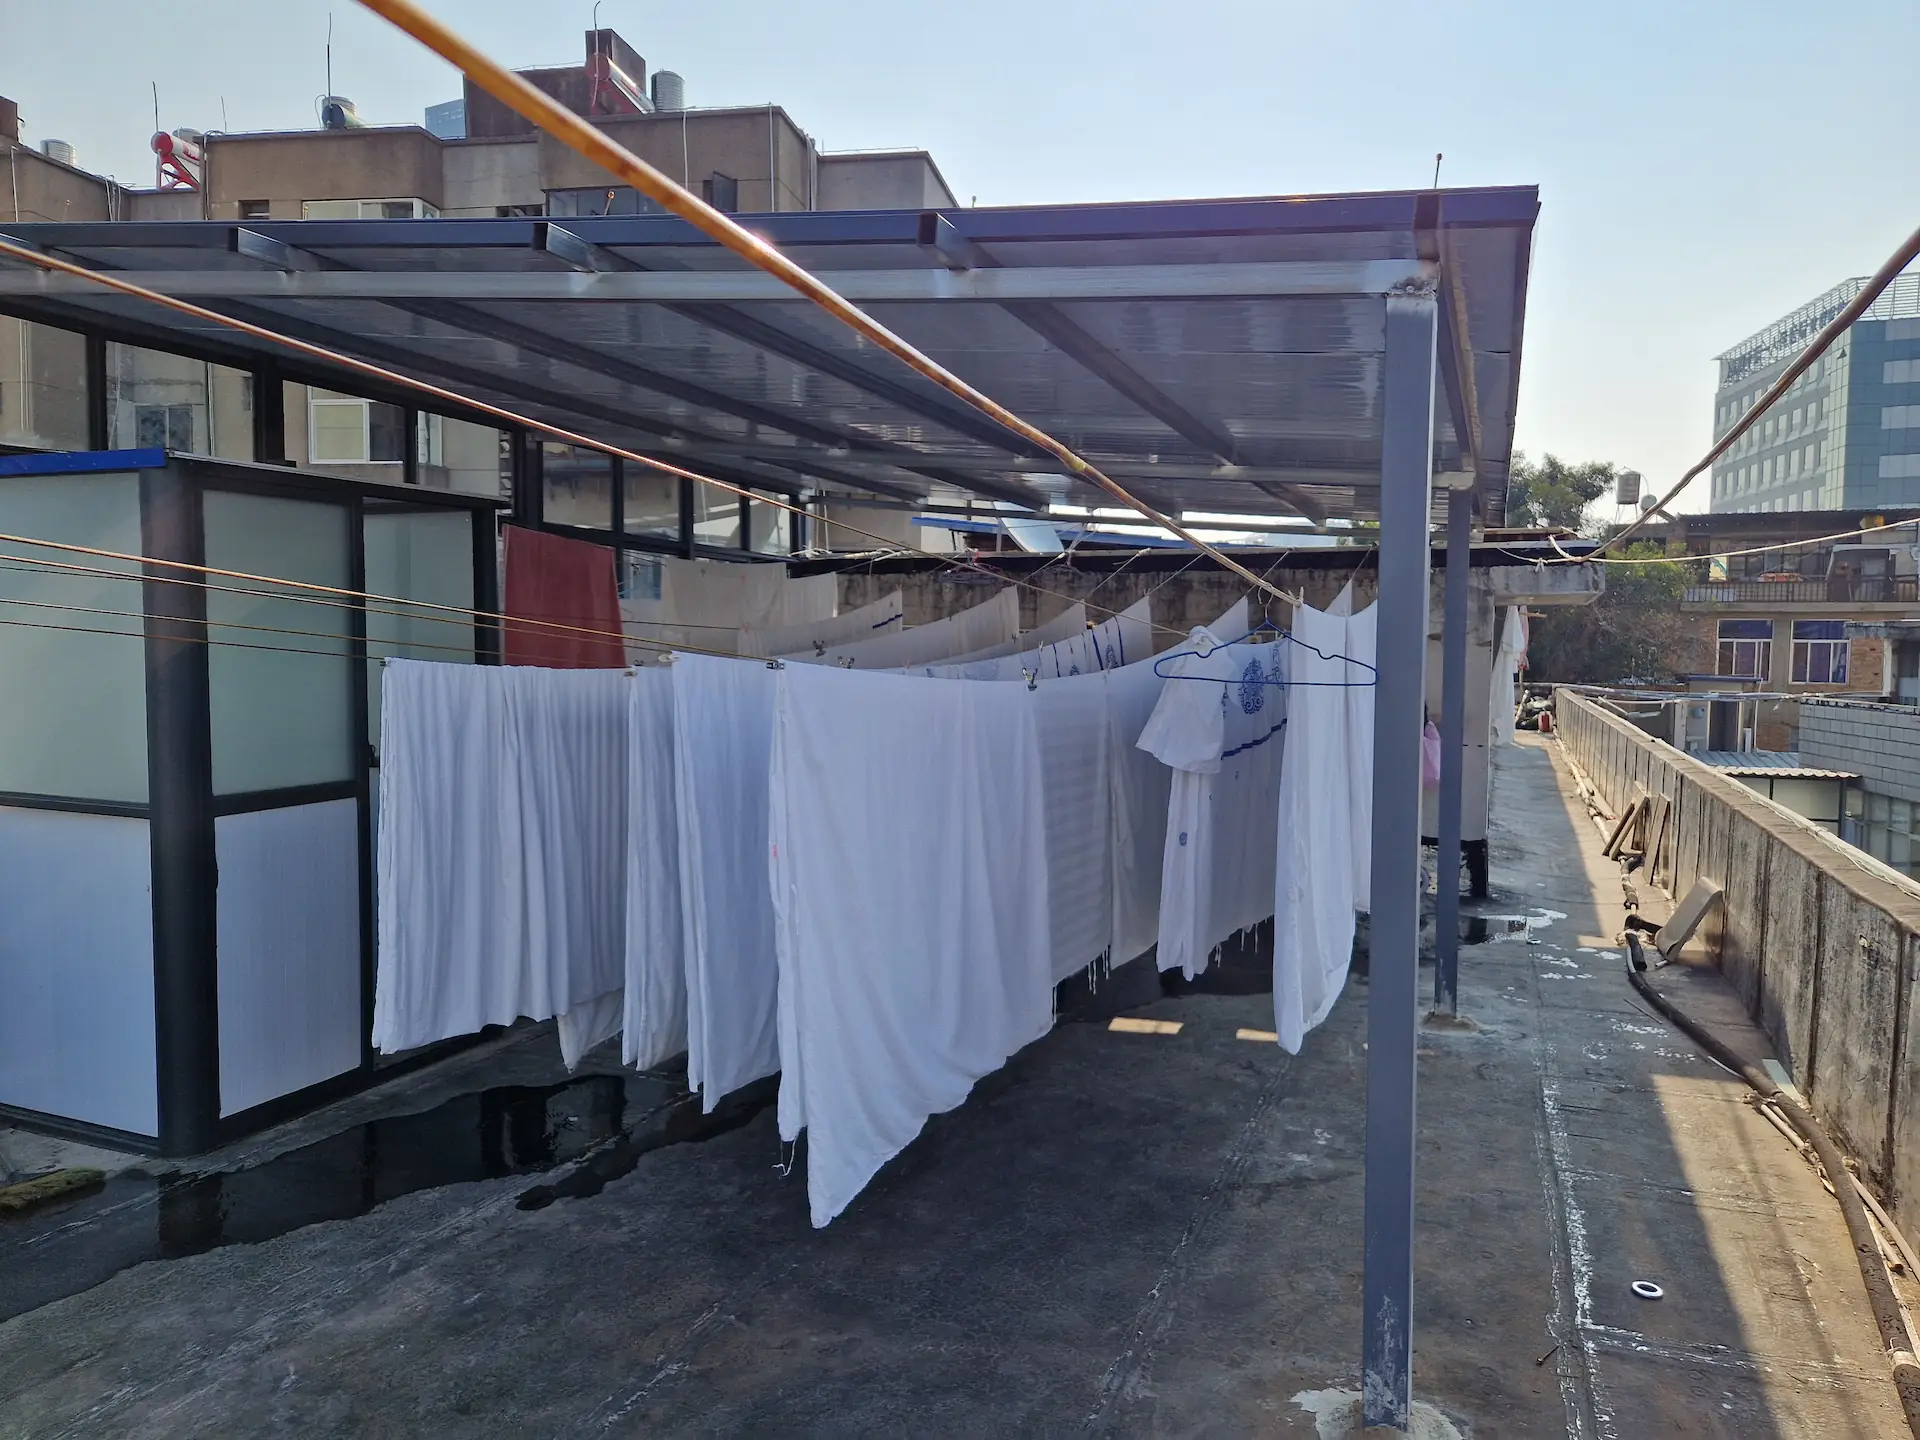 Sur le toit ouvert du bâtiment, les draps blancs de l'hôtel sèchent sur des fils tendus.